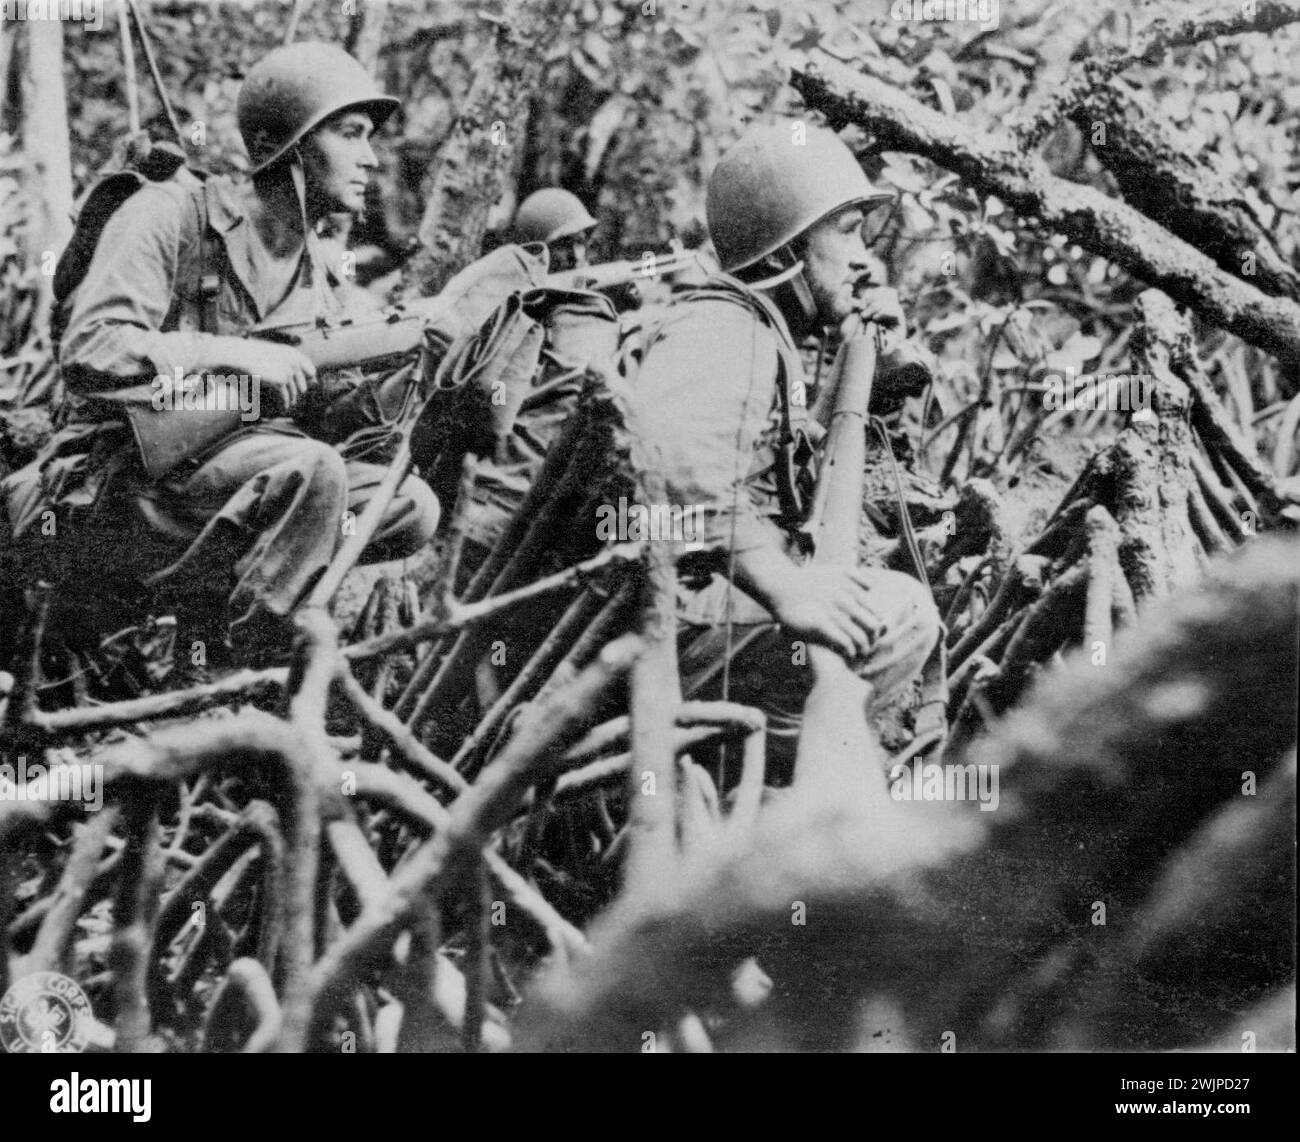 TESSE Awaiting Orders -- Infanteristen der US-Armee blicken aufmerksam nach vorne, während sie erwarten, dass sie von ihrer Position über das offene Wasser zu einer anderen Insel im Südwesten des Pazifiks vorrücken. November 1943. (Foto mit zugehöriger Taste Drahtfoto). Stockfoto